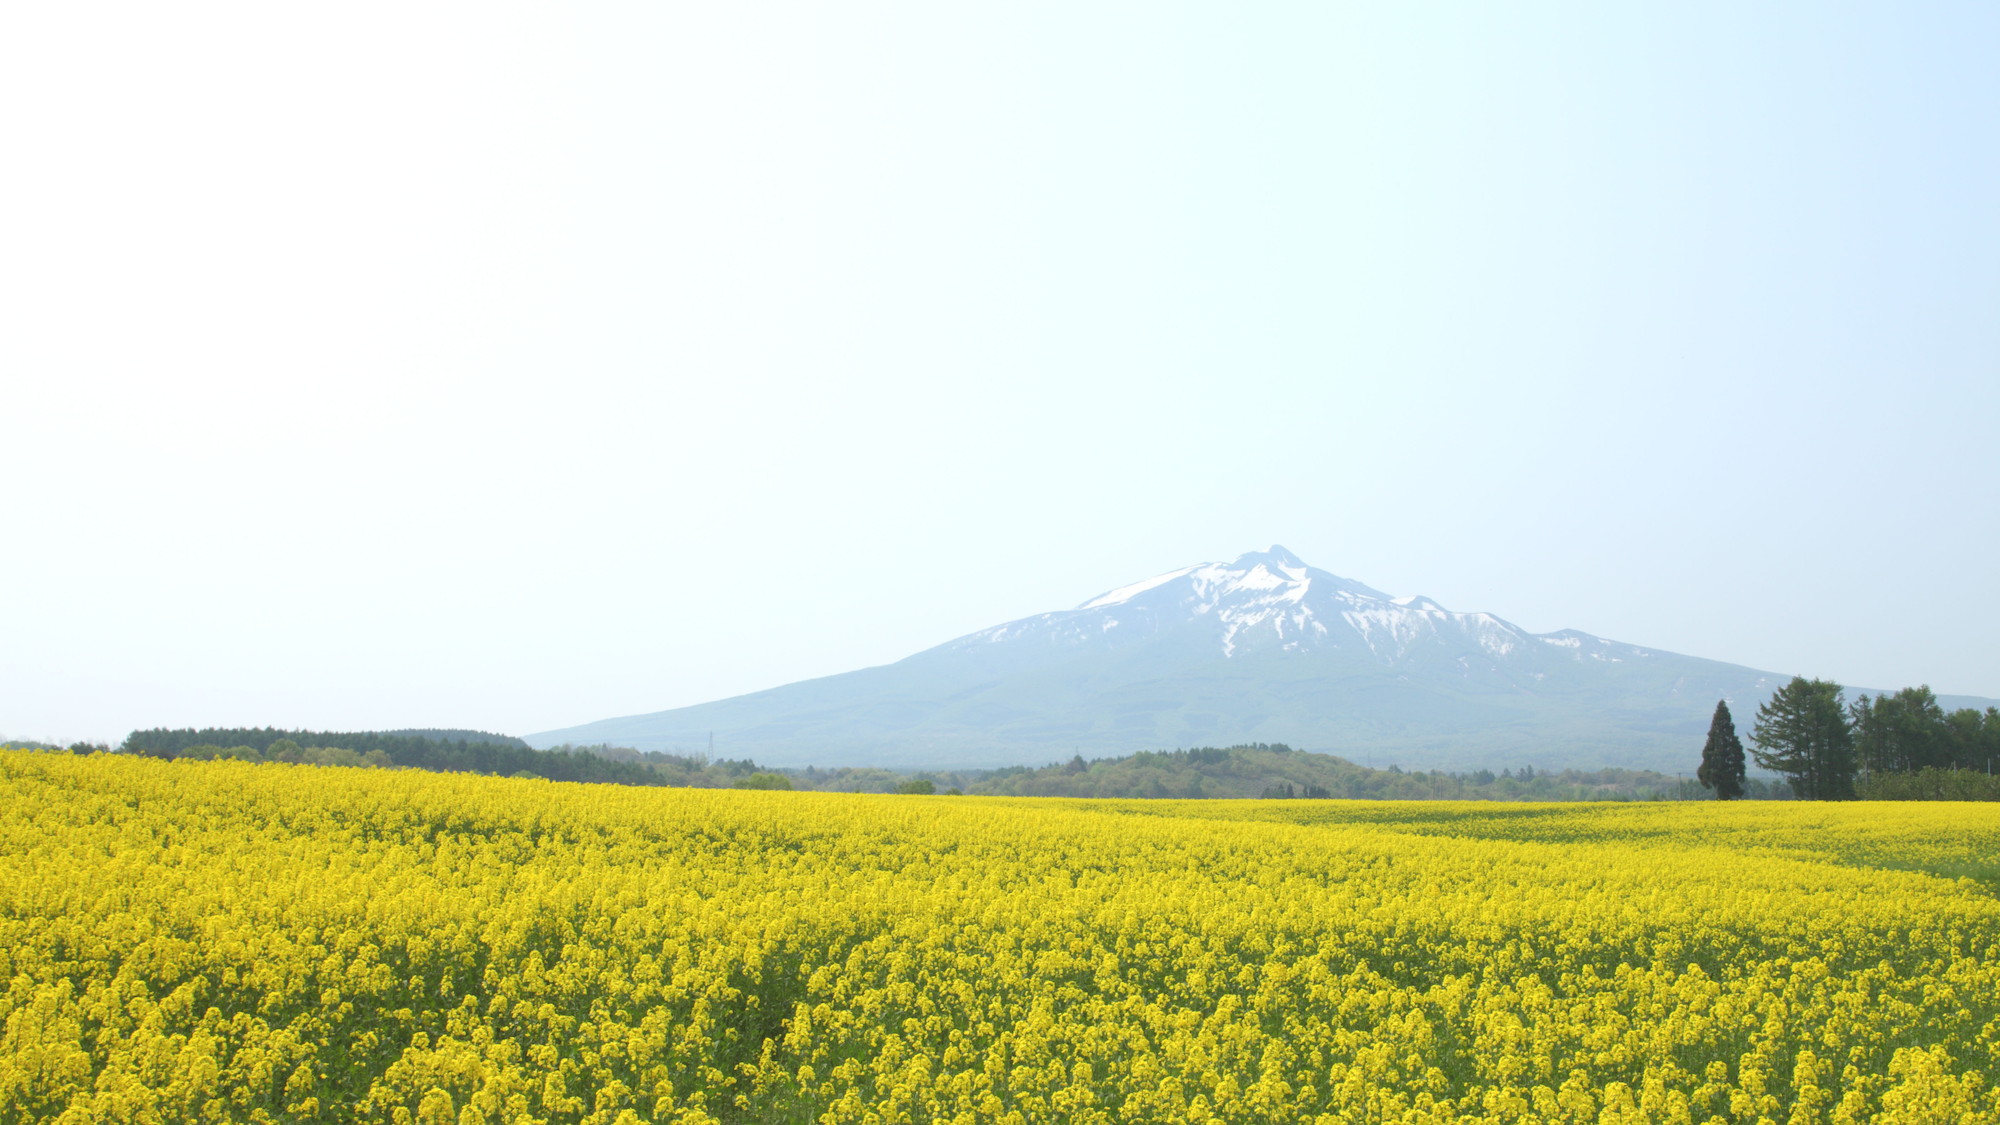 【鯵ヶ沢町】鰺ヶ沢の菜の花畑です。背景は岩木山です